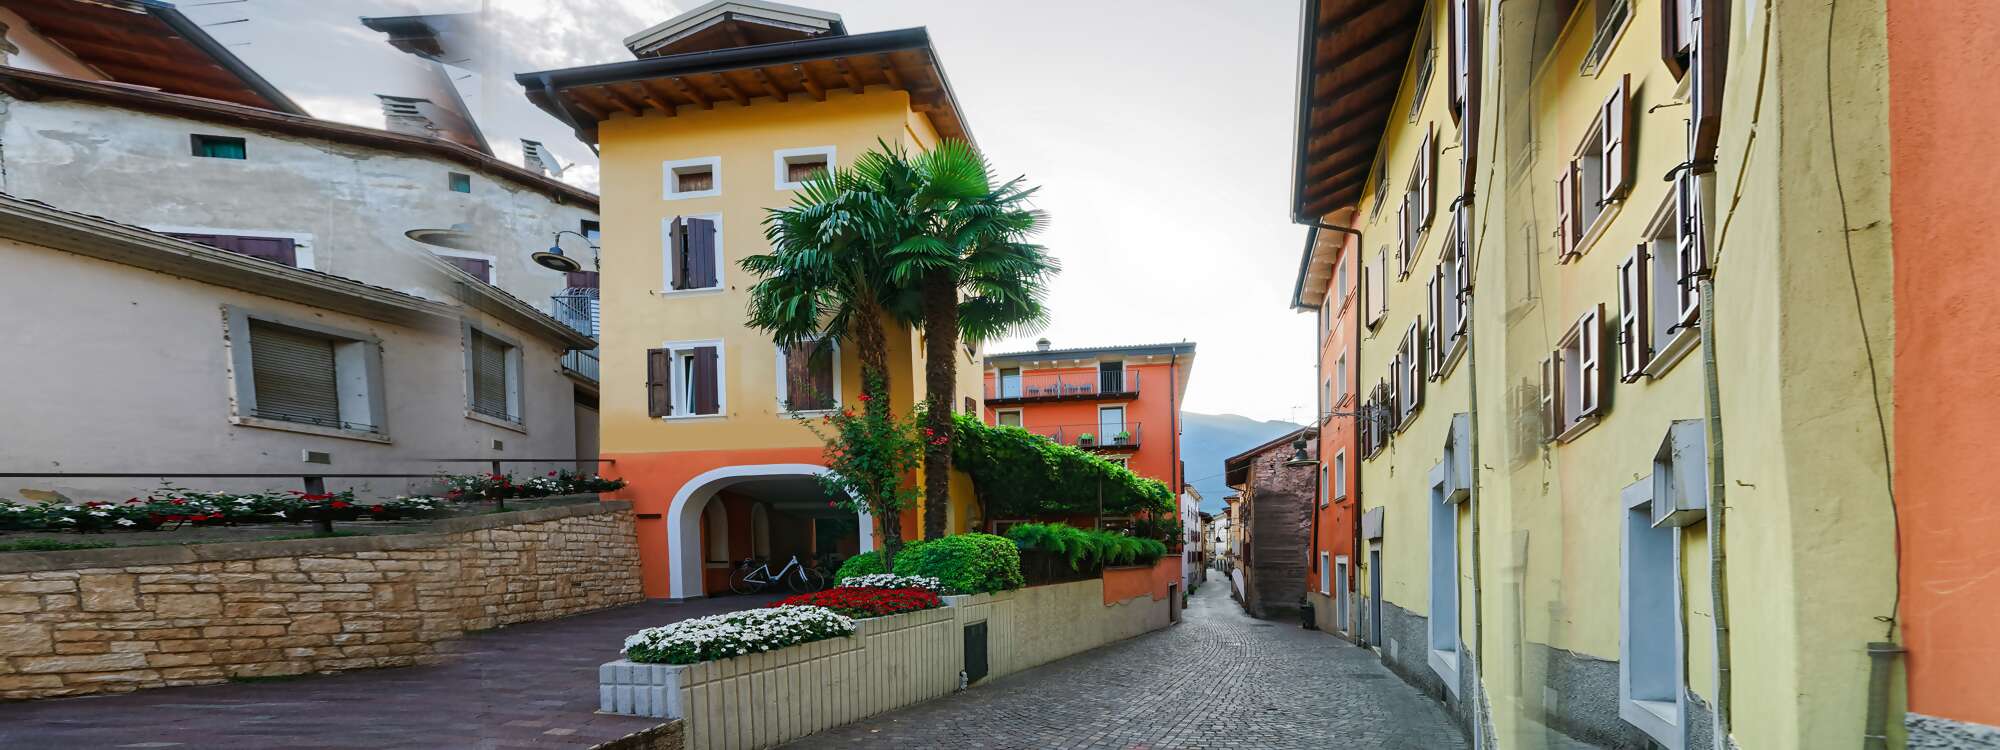 Wer vom Dorf aus zum Schloss Arco spaziert, bahnt sich seinen Weg vom Stadtzentrum mit seinen pittoresken Häuserfassaden durch gepflasterte Gassen, die immer enger werden - Arco in der Region Gardasee